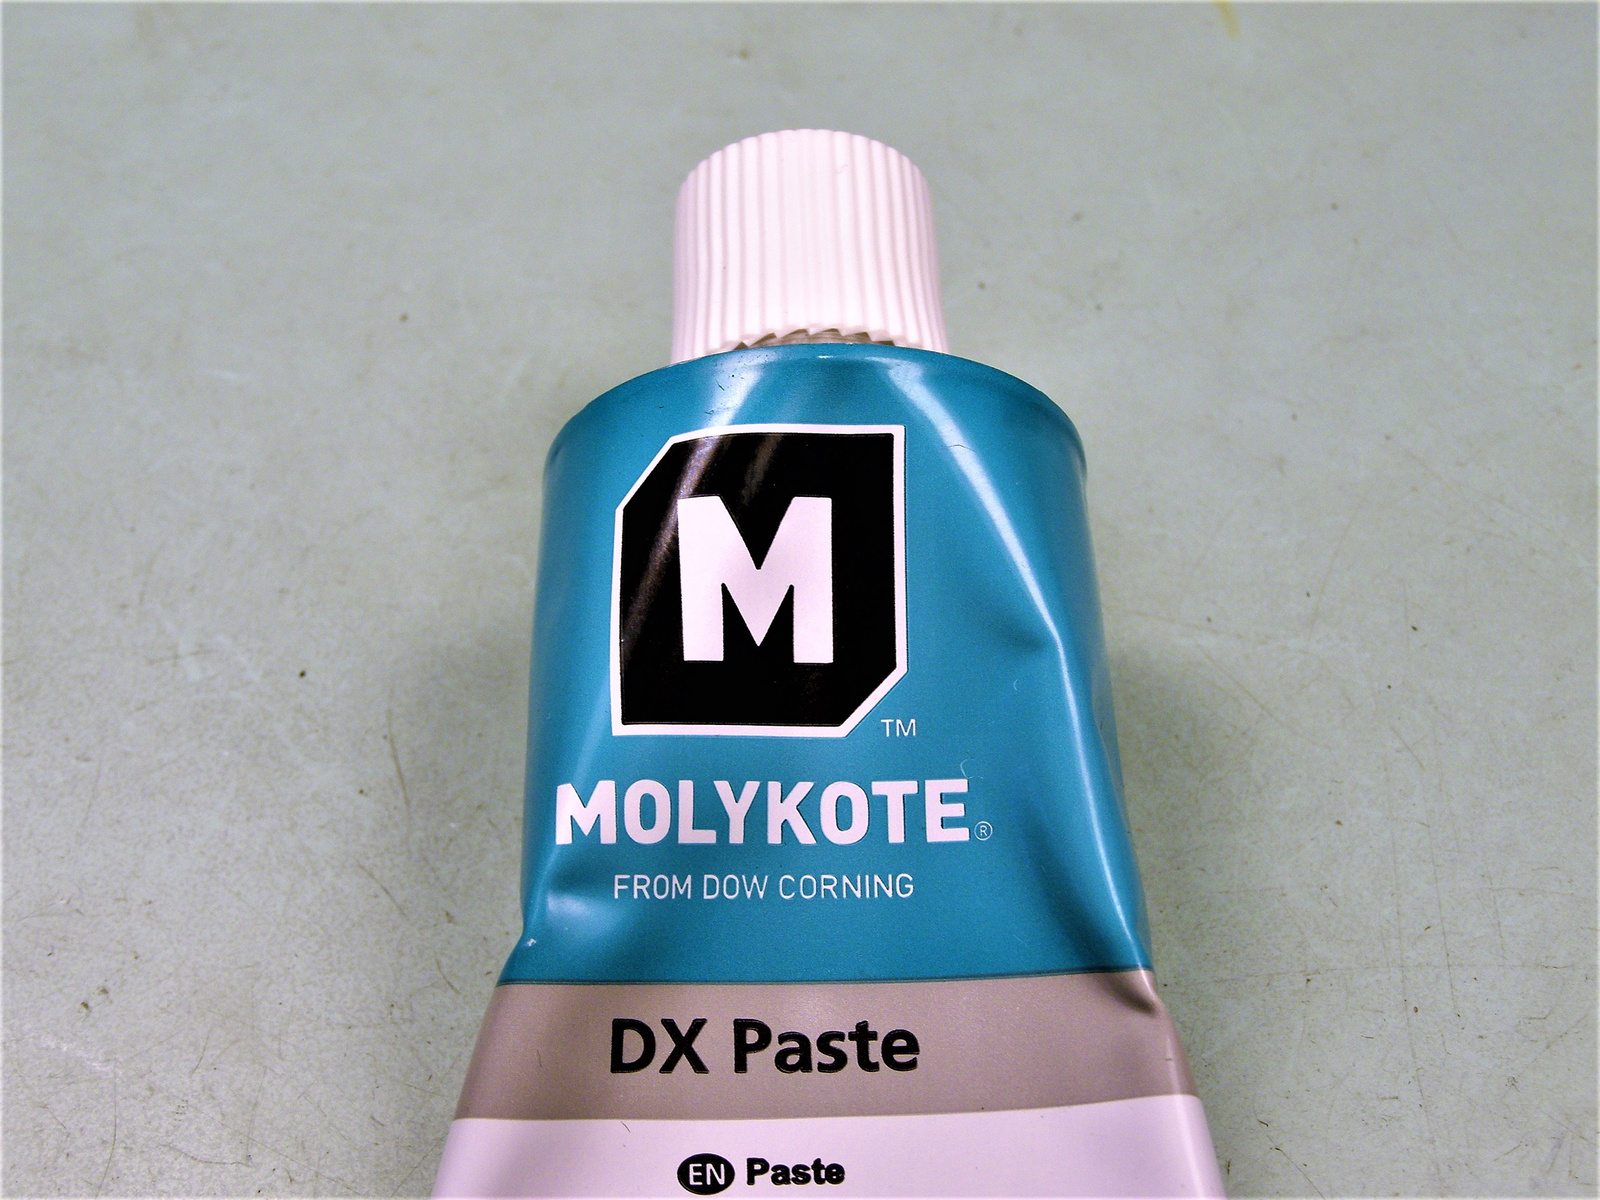 Molykote DX paste